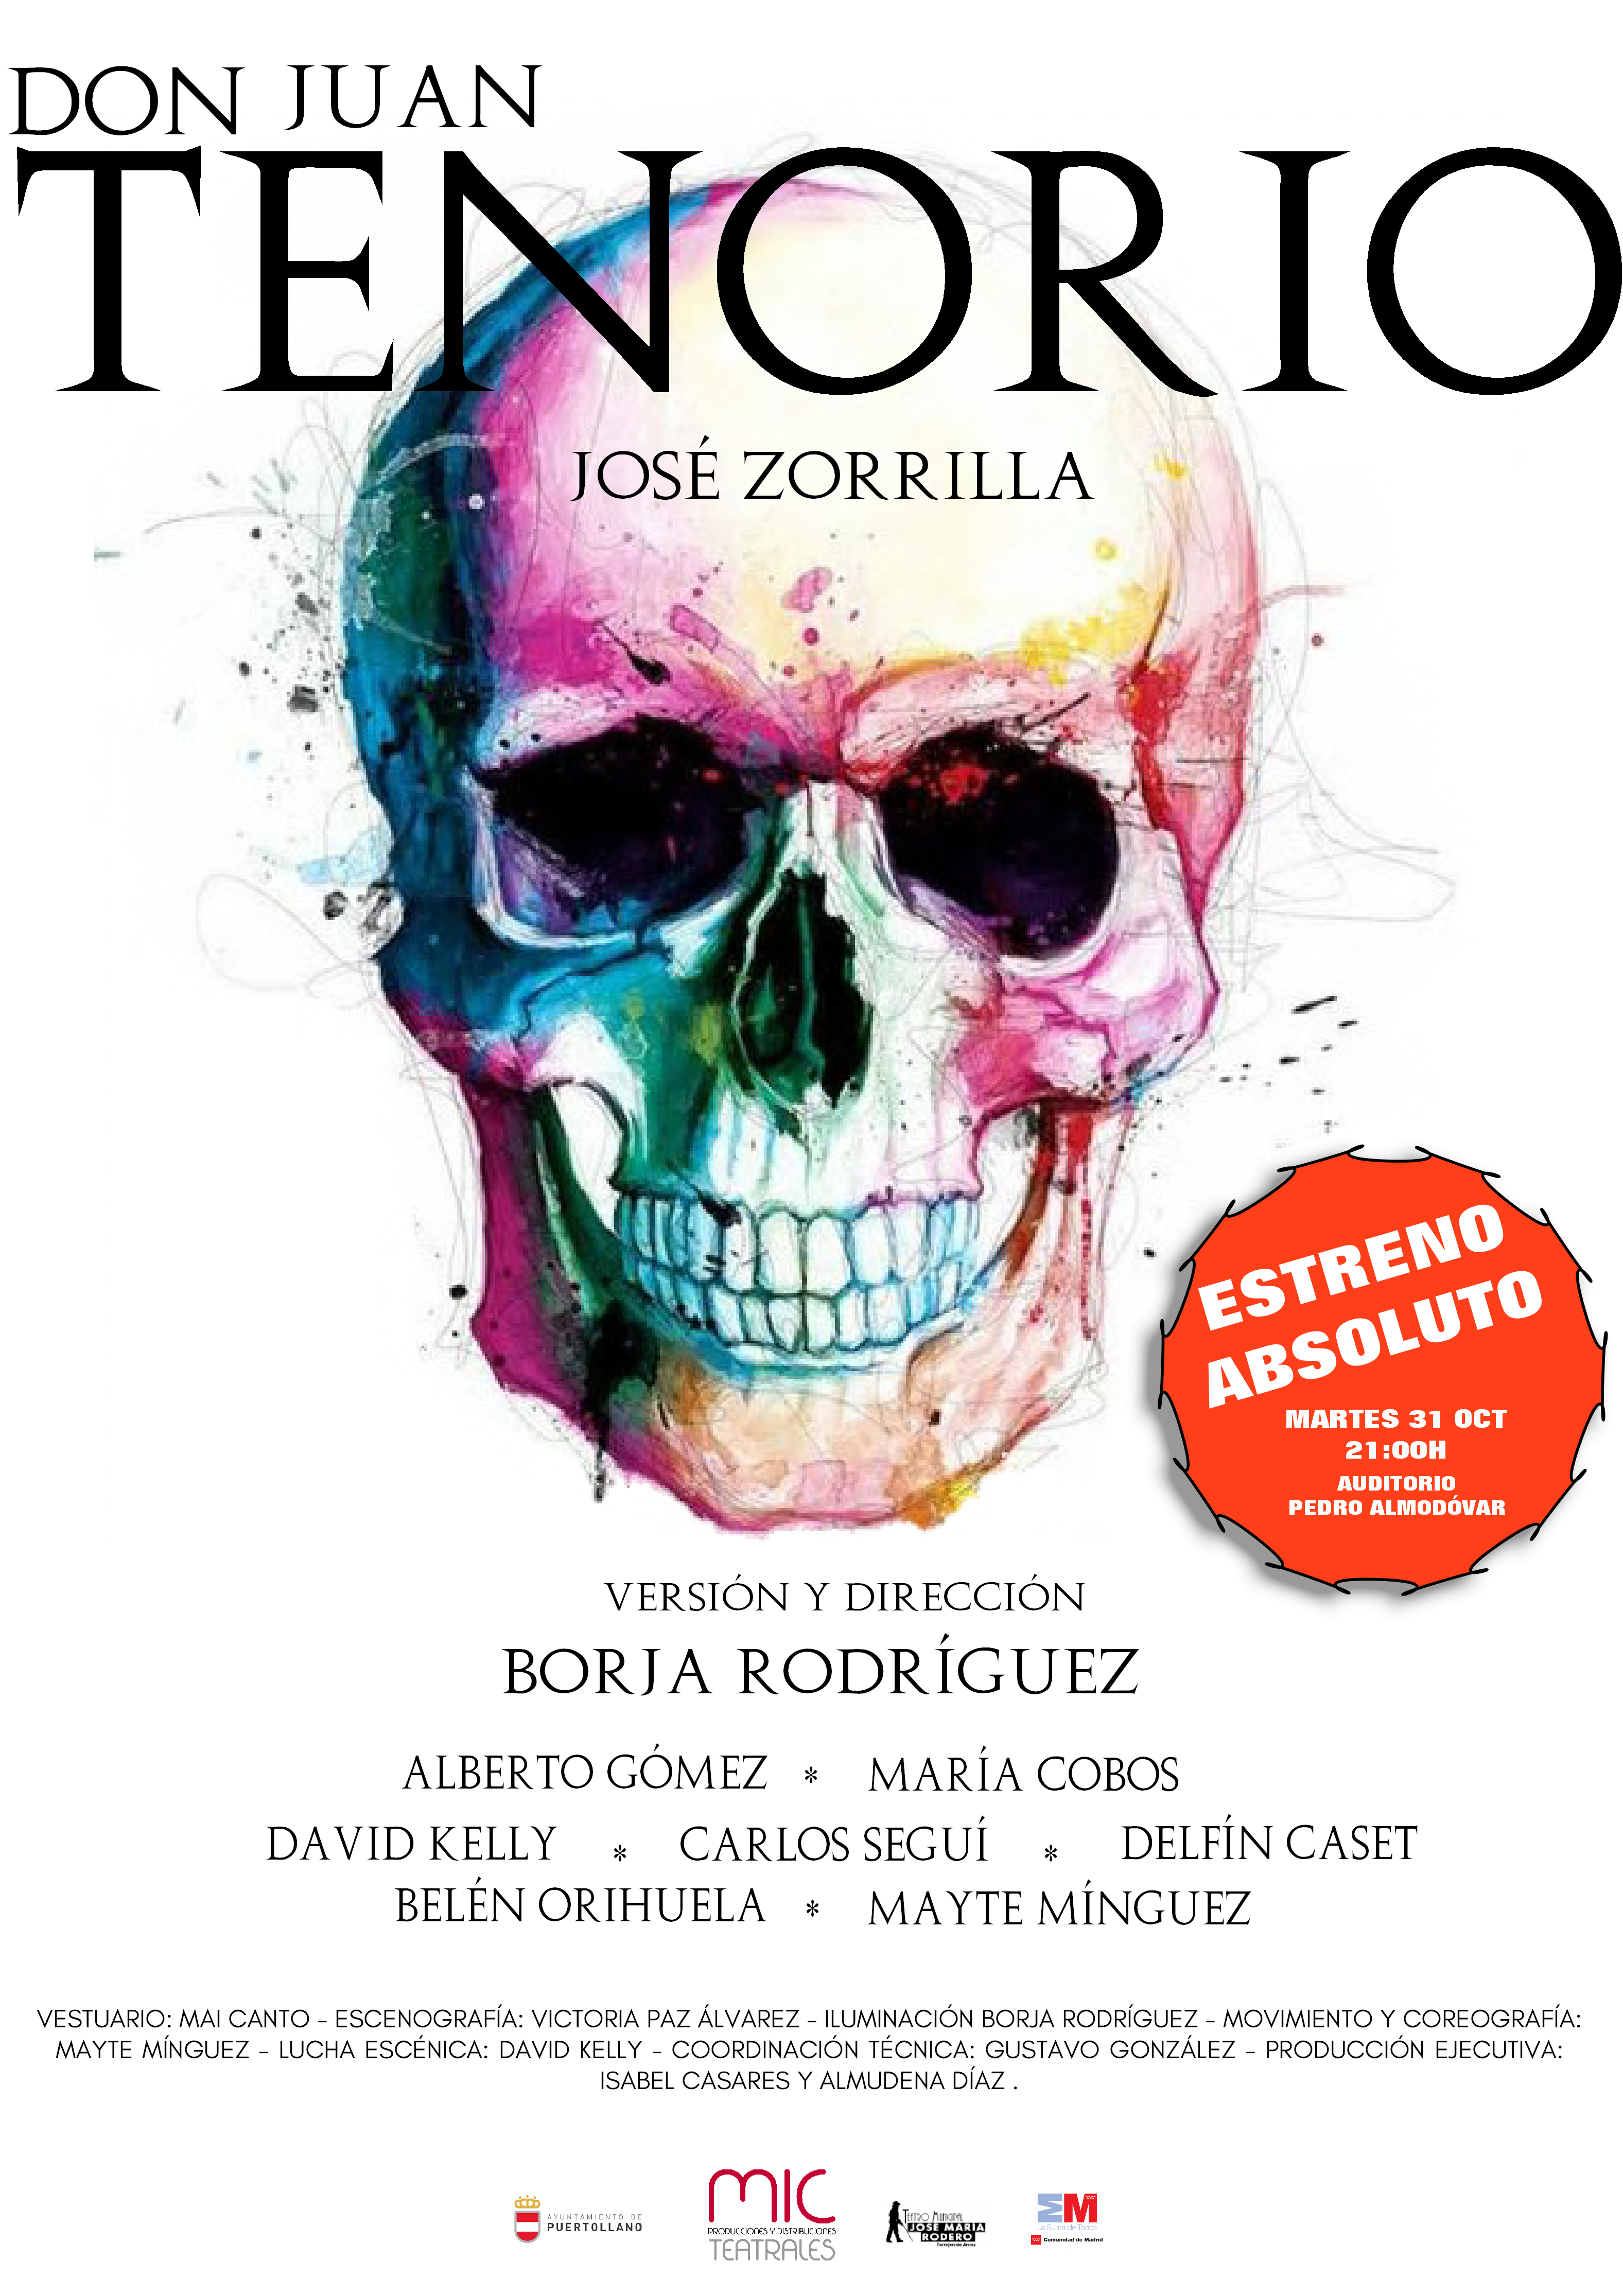 Cartel "Don Juan Tenorio" de José Zorrilla. Versión y Dirección de Borja Rodríguez